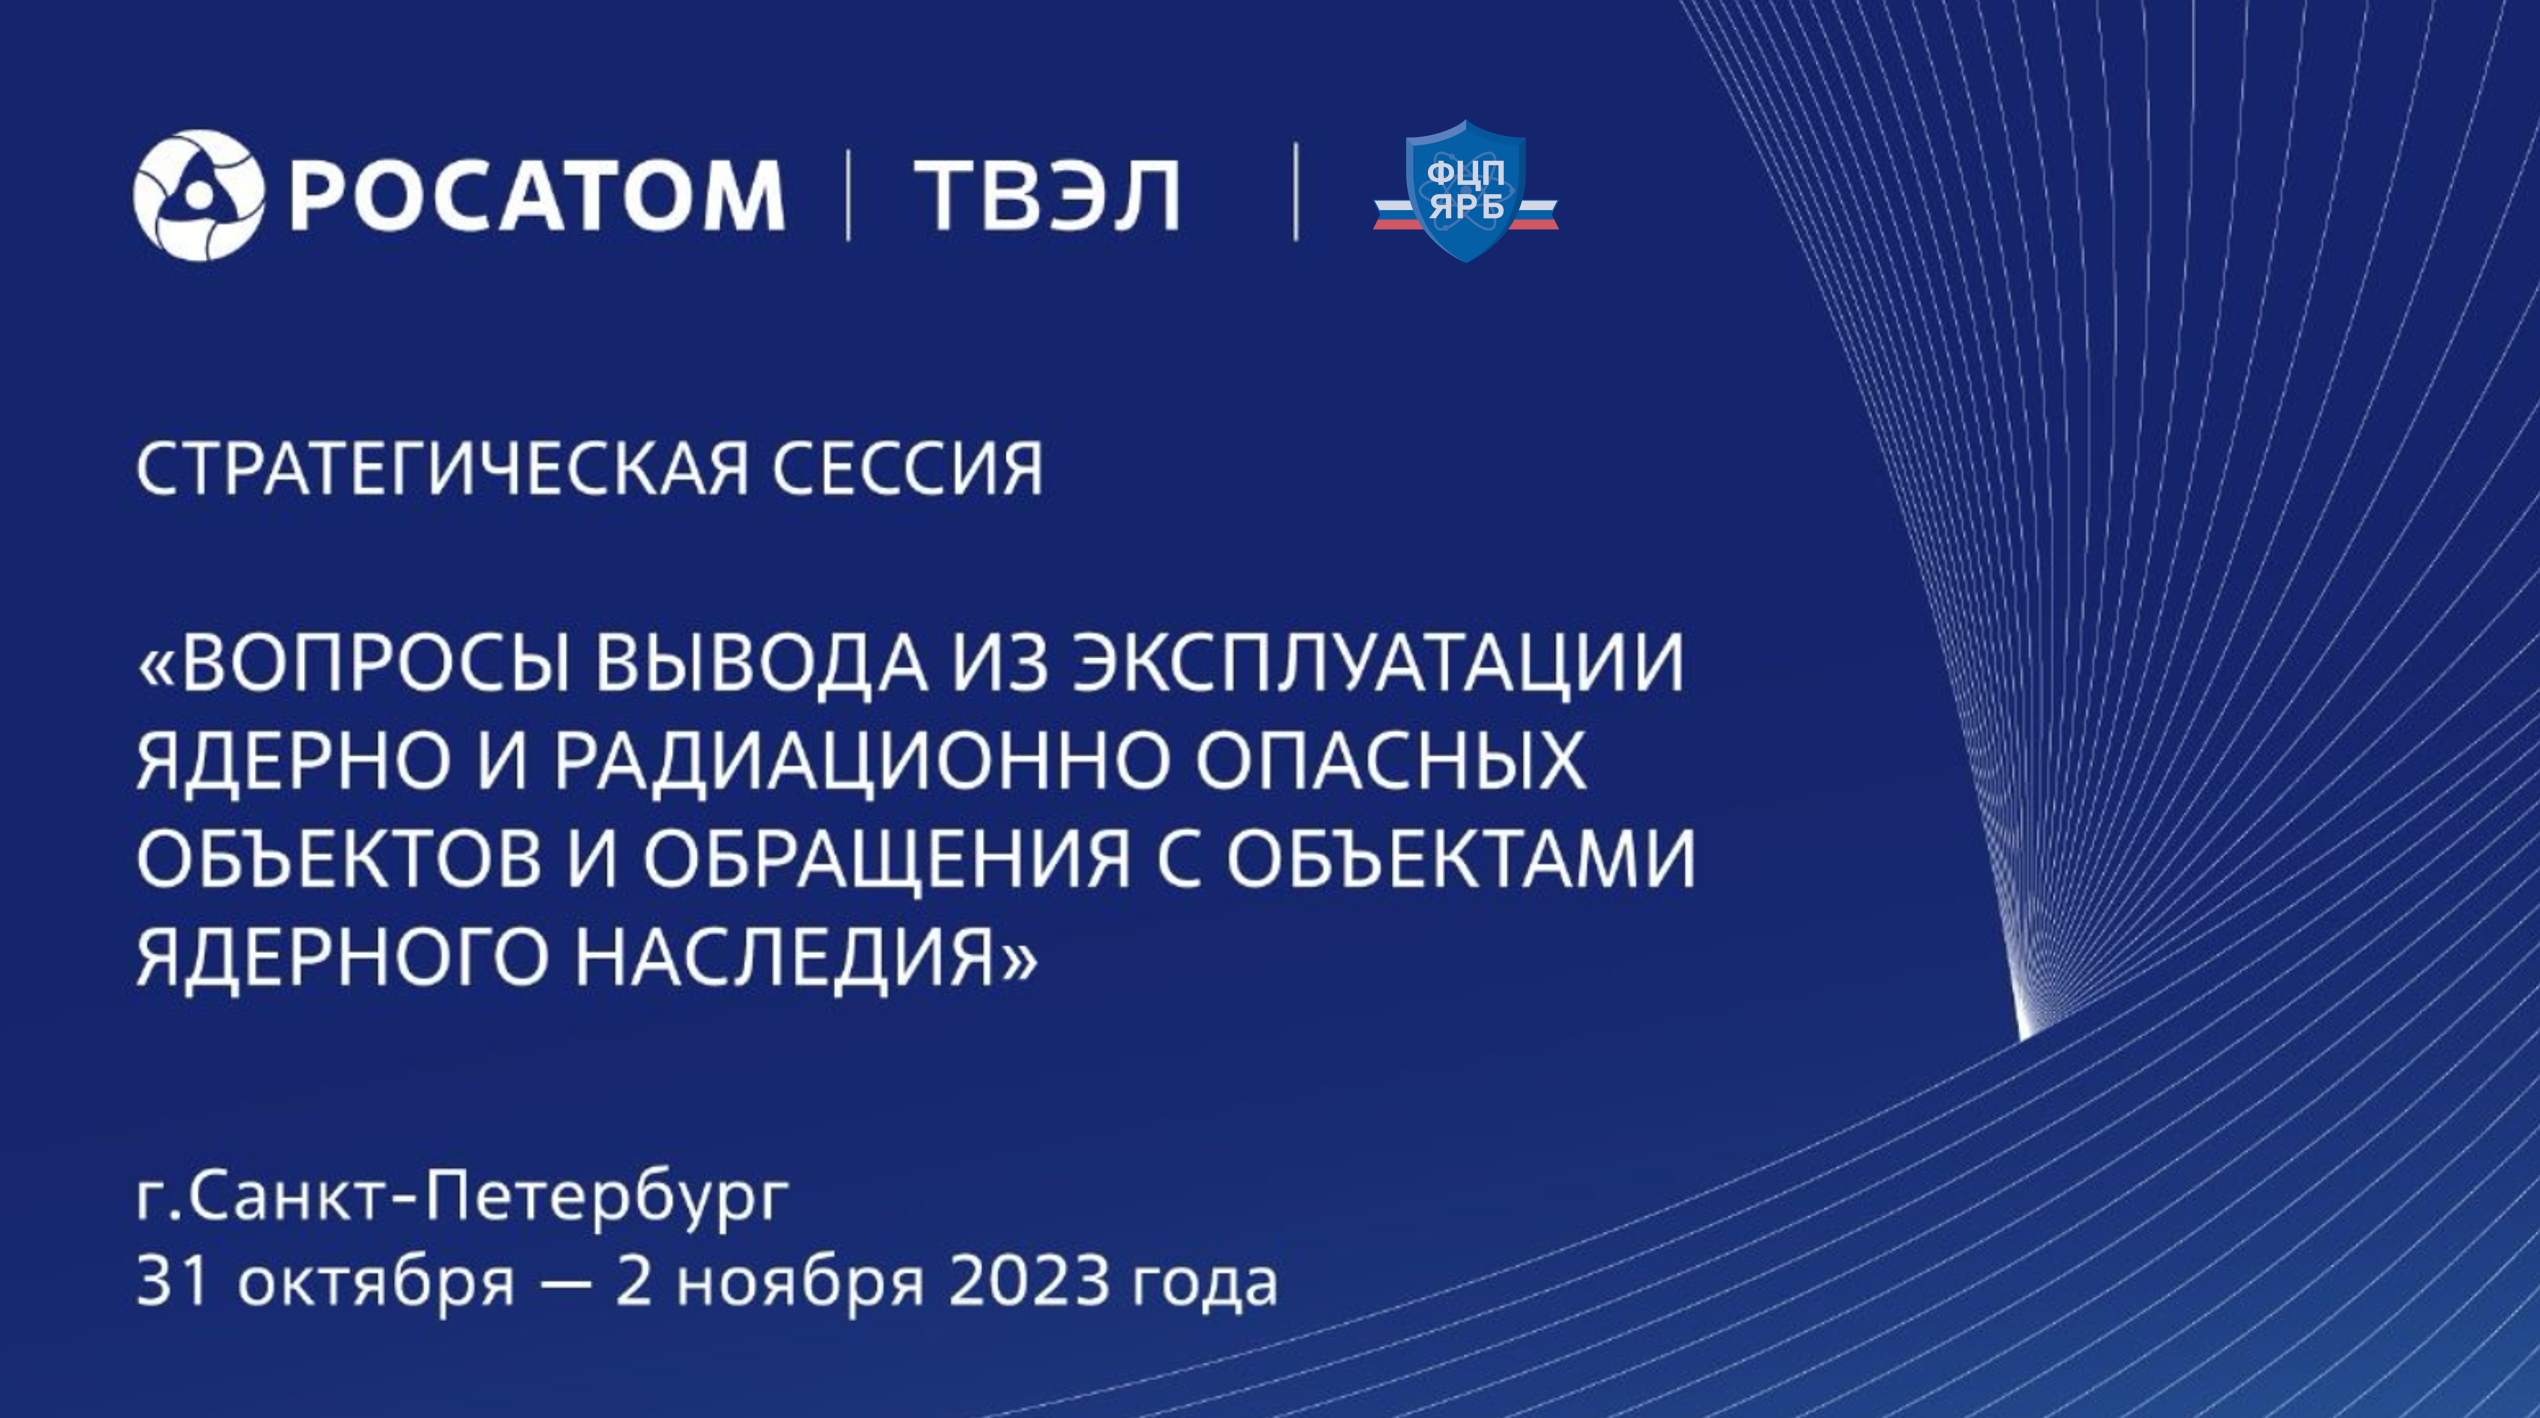 В Санкт-Петербурге пройдет стратегическая сессия Госкорпорации «Росатом» по вопросам вывода из эксплуатации ядерно и радиационно опасных объектов